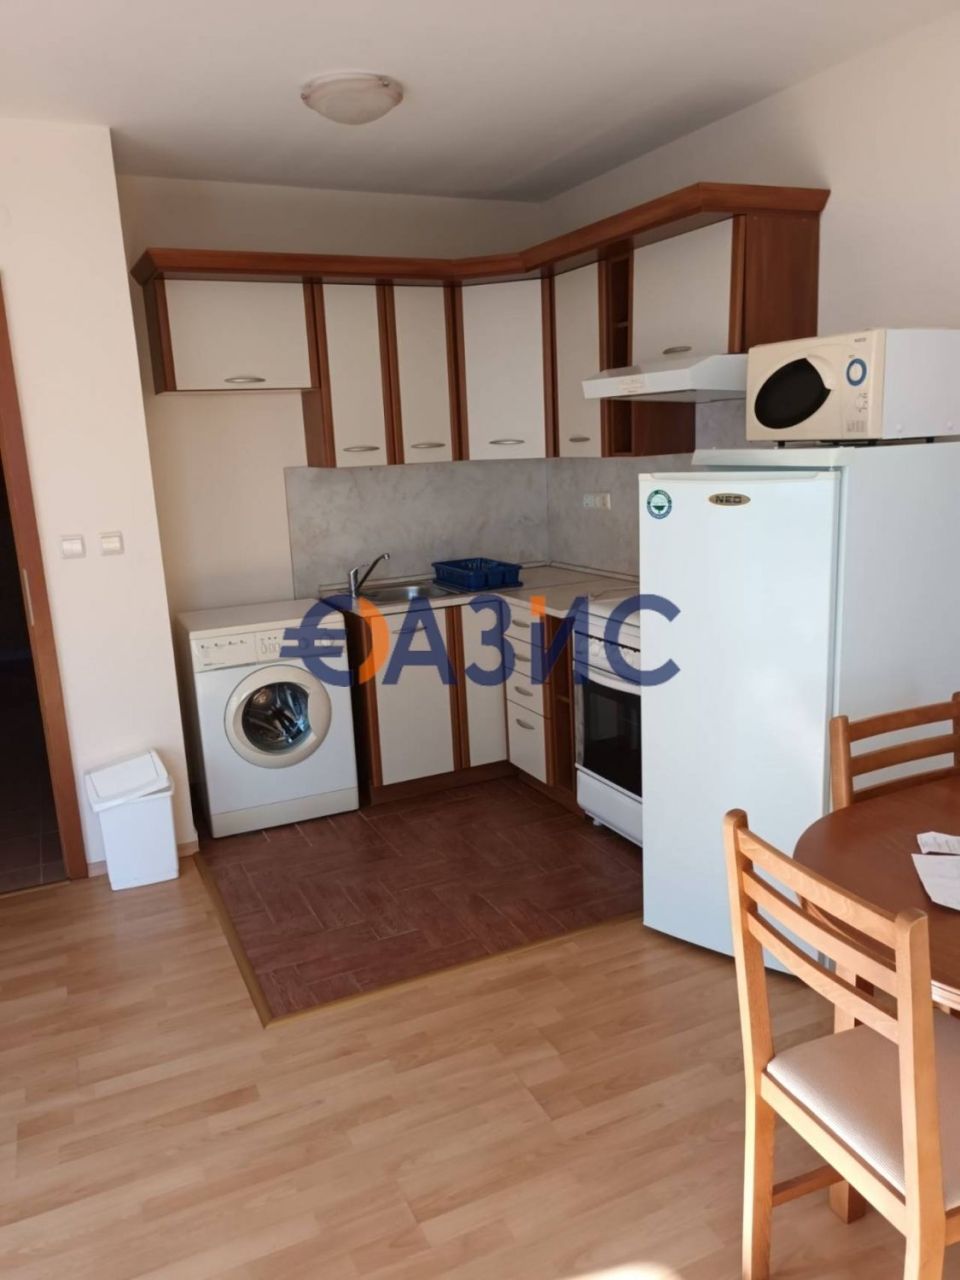 Apartment in Elenite, Bulgarien, 75 m2 - Foto 1